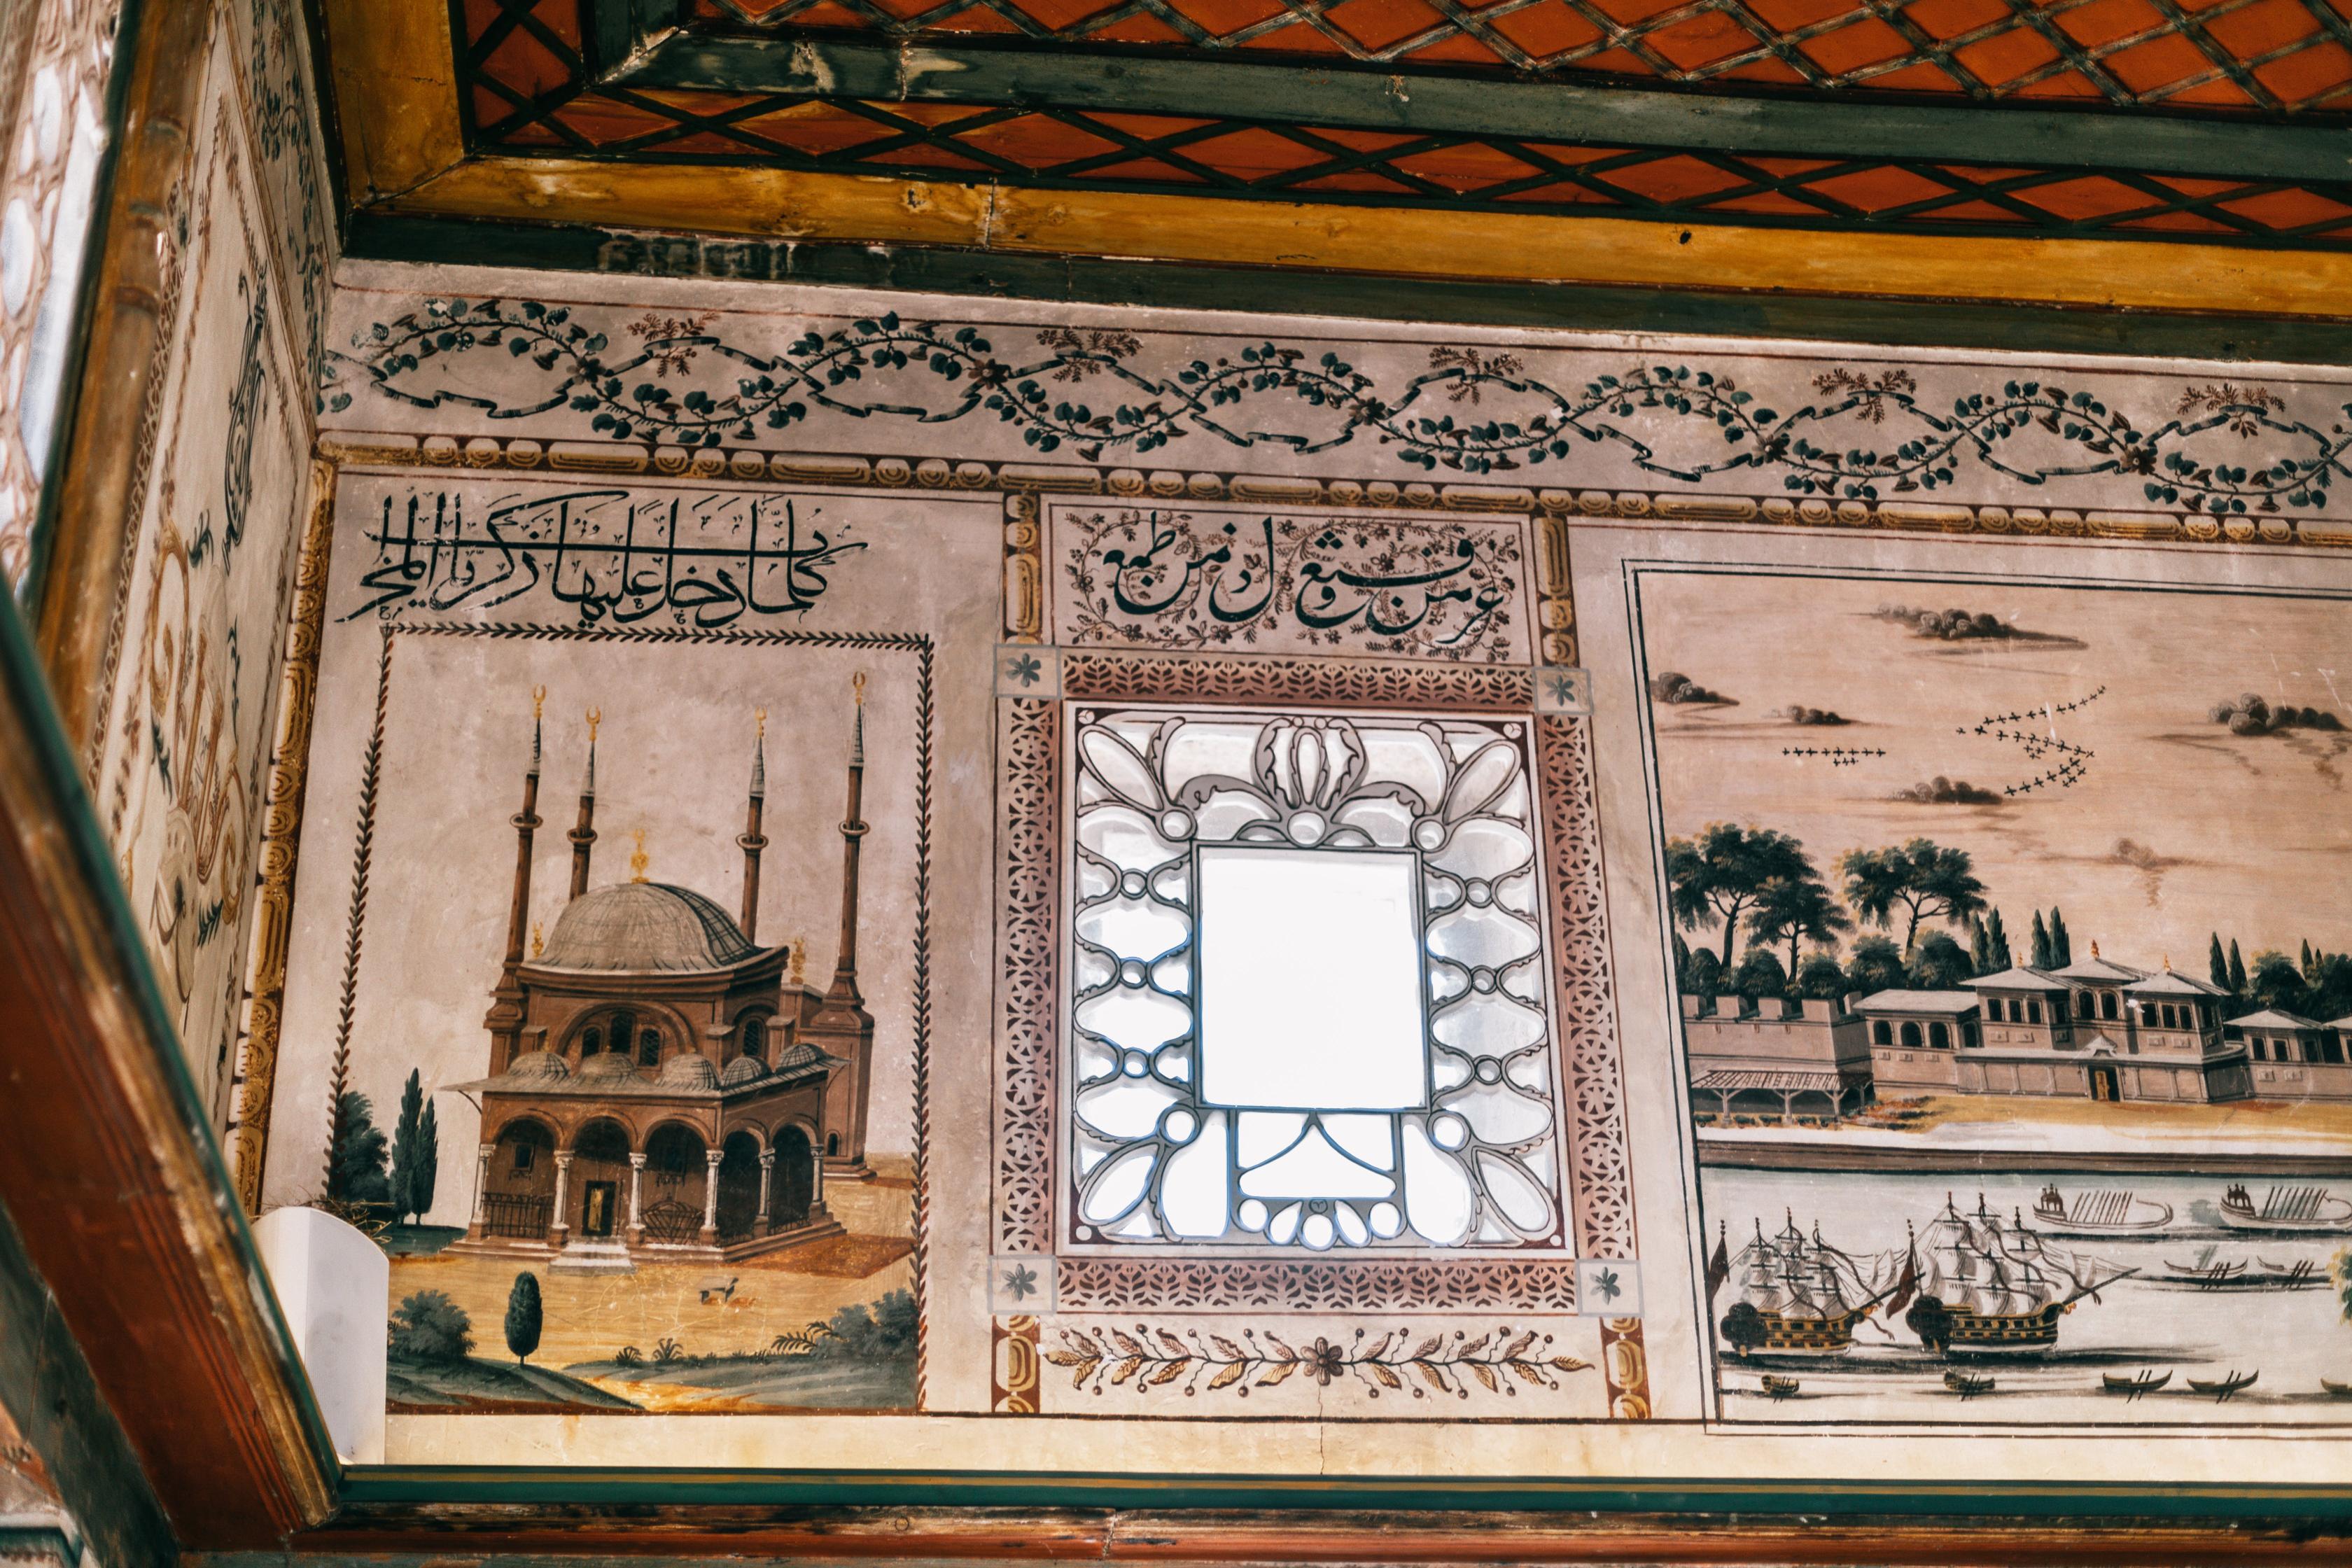 Le origini dell'arte a salerno: i mosaici bizantini e le influenze medioevali